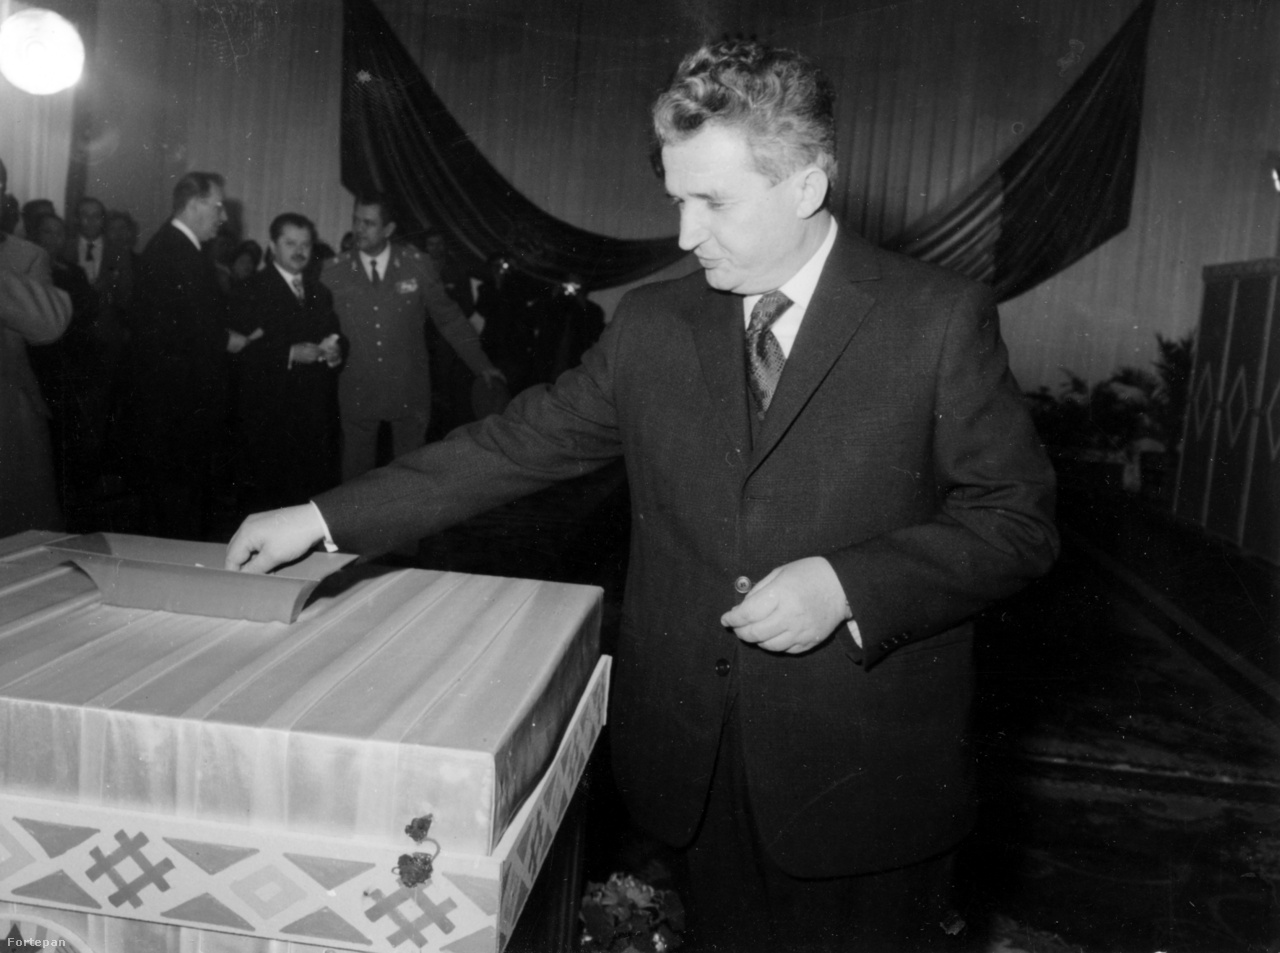 Nicolae Ceaușescut 1974-ben választották Románia első elnökévé. A kárpátok géniusza itt alighanem sajét magára szavaz. Ekkor már kilenc éve töltötte be a Román Kommunista Párt főtitkári posztját, az országban mind jobban elhatalmasodott a személyi kultusz. Az Új Élet Ceaușescu elnökké választását "történelmünk nagy pillanatának" nevezte, és a kor divatjának megfelelően nagy összeállításban emlékezett meg a pártvezér életéről. A kép hátterében Manea Manescu román miniszterelnök, jobbra mellette Fazekas János erdélyi magyar politikus, a Román Kommunista Párt Politikai Végrehajtó Bizottságának tagja. Ceaușescut 1989-ben kivégezték. A Ceaușescunál két évvel idősebb Manescu felesége Ceaușescu lánya, Maria volt. Manescu 2009-ben halt meg Bukarestben. Az újságíróként és történészként is ismert Fazekas János Sütő András szerint magas állami és párttisztségeiben (vagy azok ellenére) sokat tett az erdélyi magyarságért. 2004-ben Budapesten halt meg, az MTA megbízásából kutatott a magyar fővárosban.